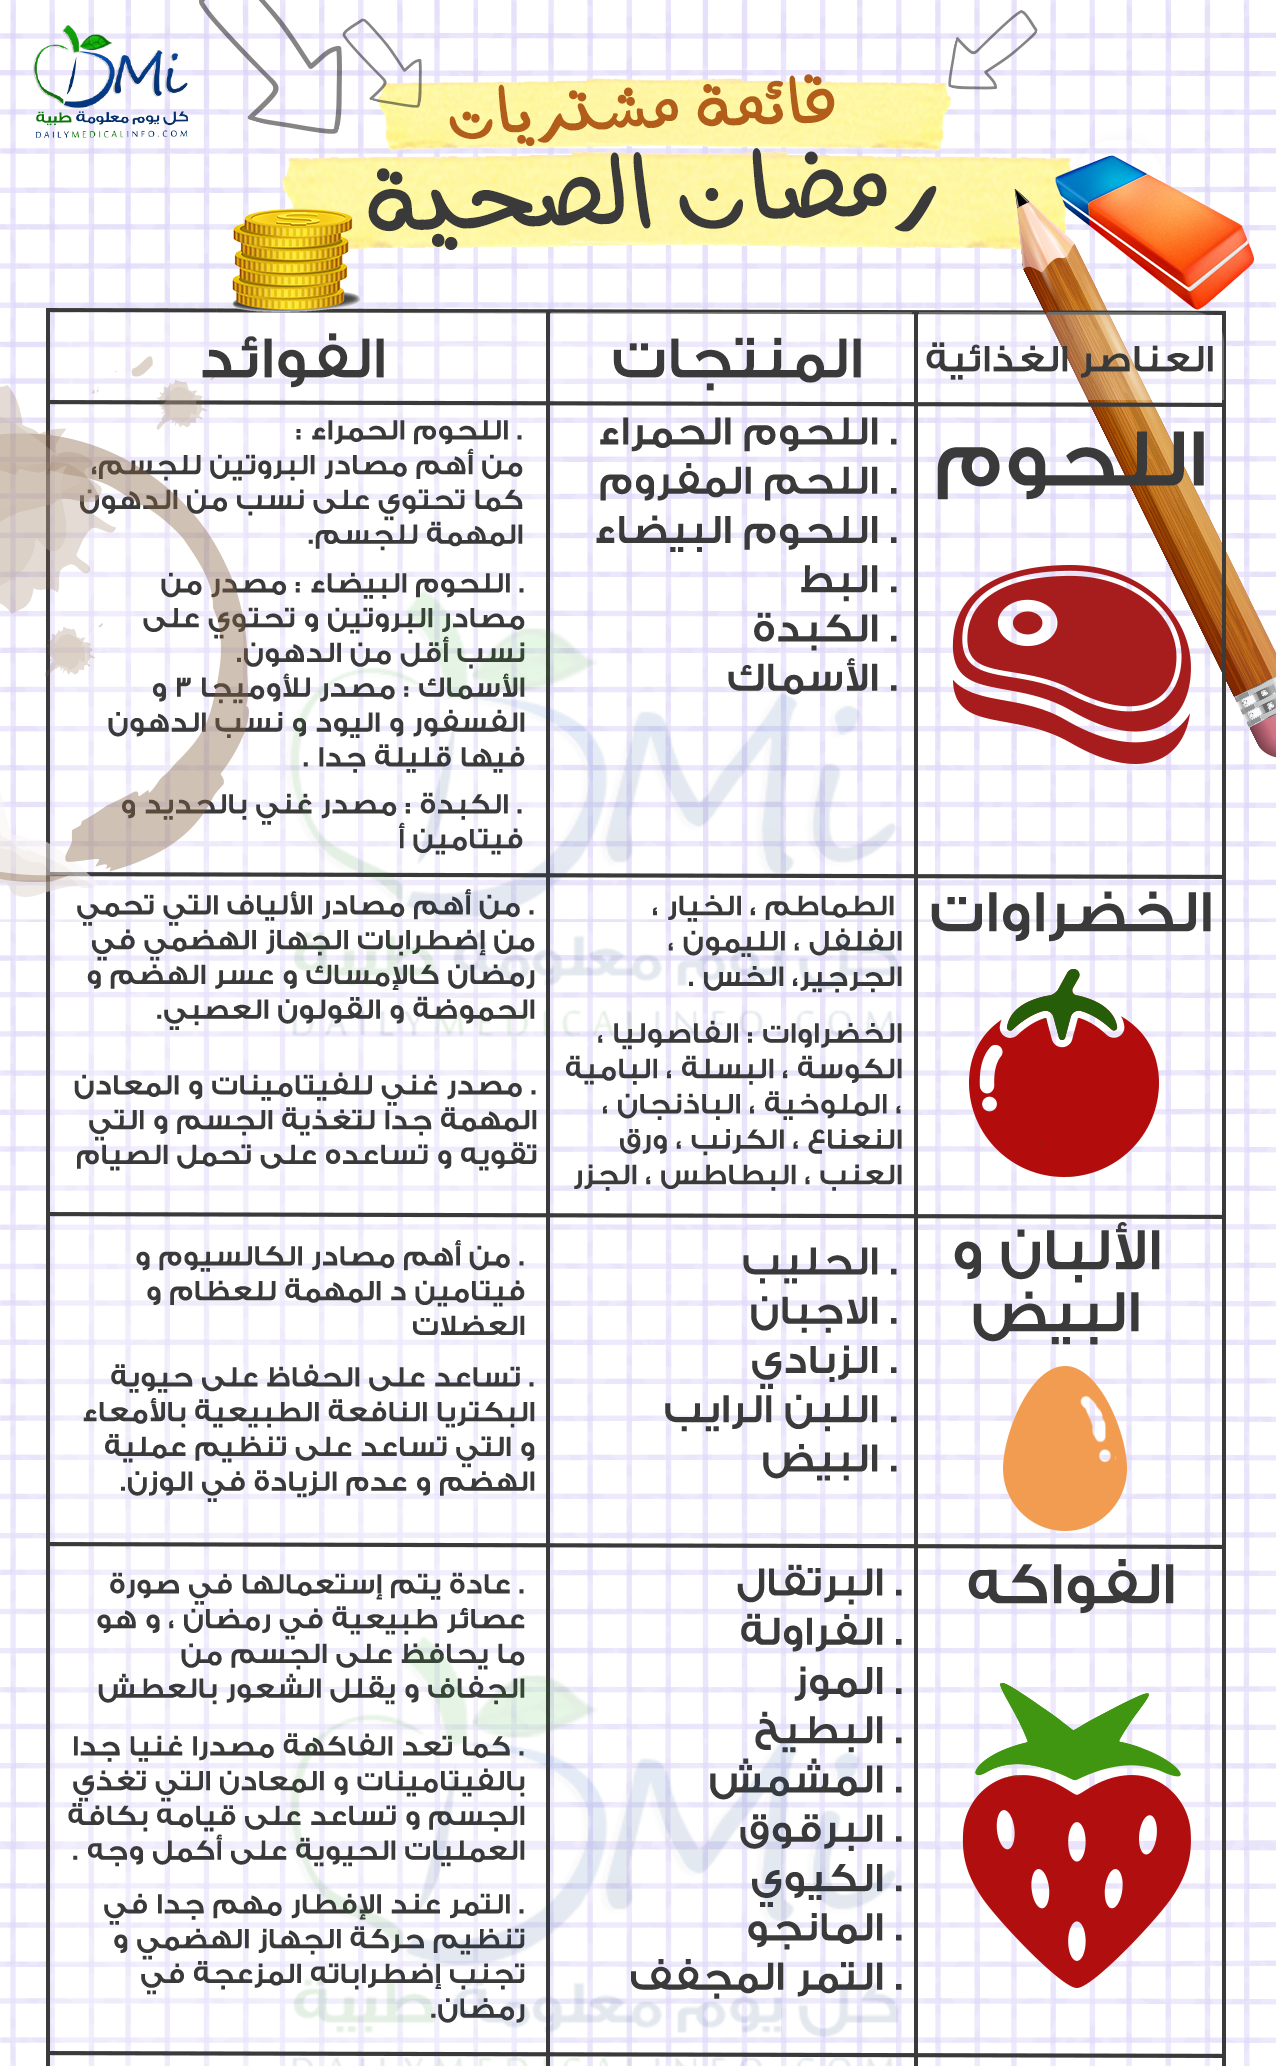 نصائح للتسوق قبل شراء احتياجات رمضان وقائمة بأهم الأغذية الصحية صحيفة تواصل الالكترونية